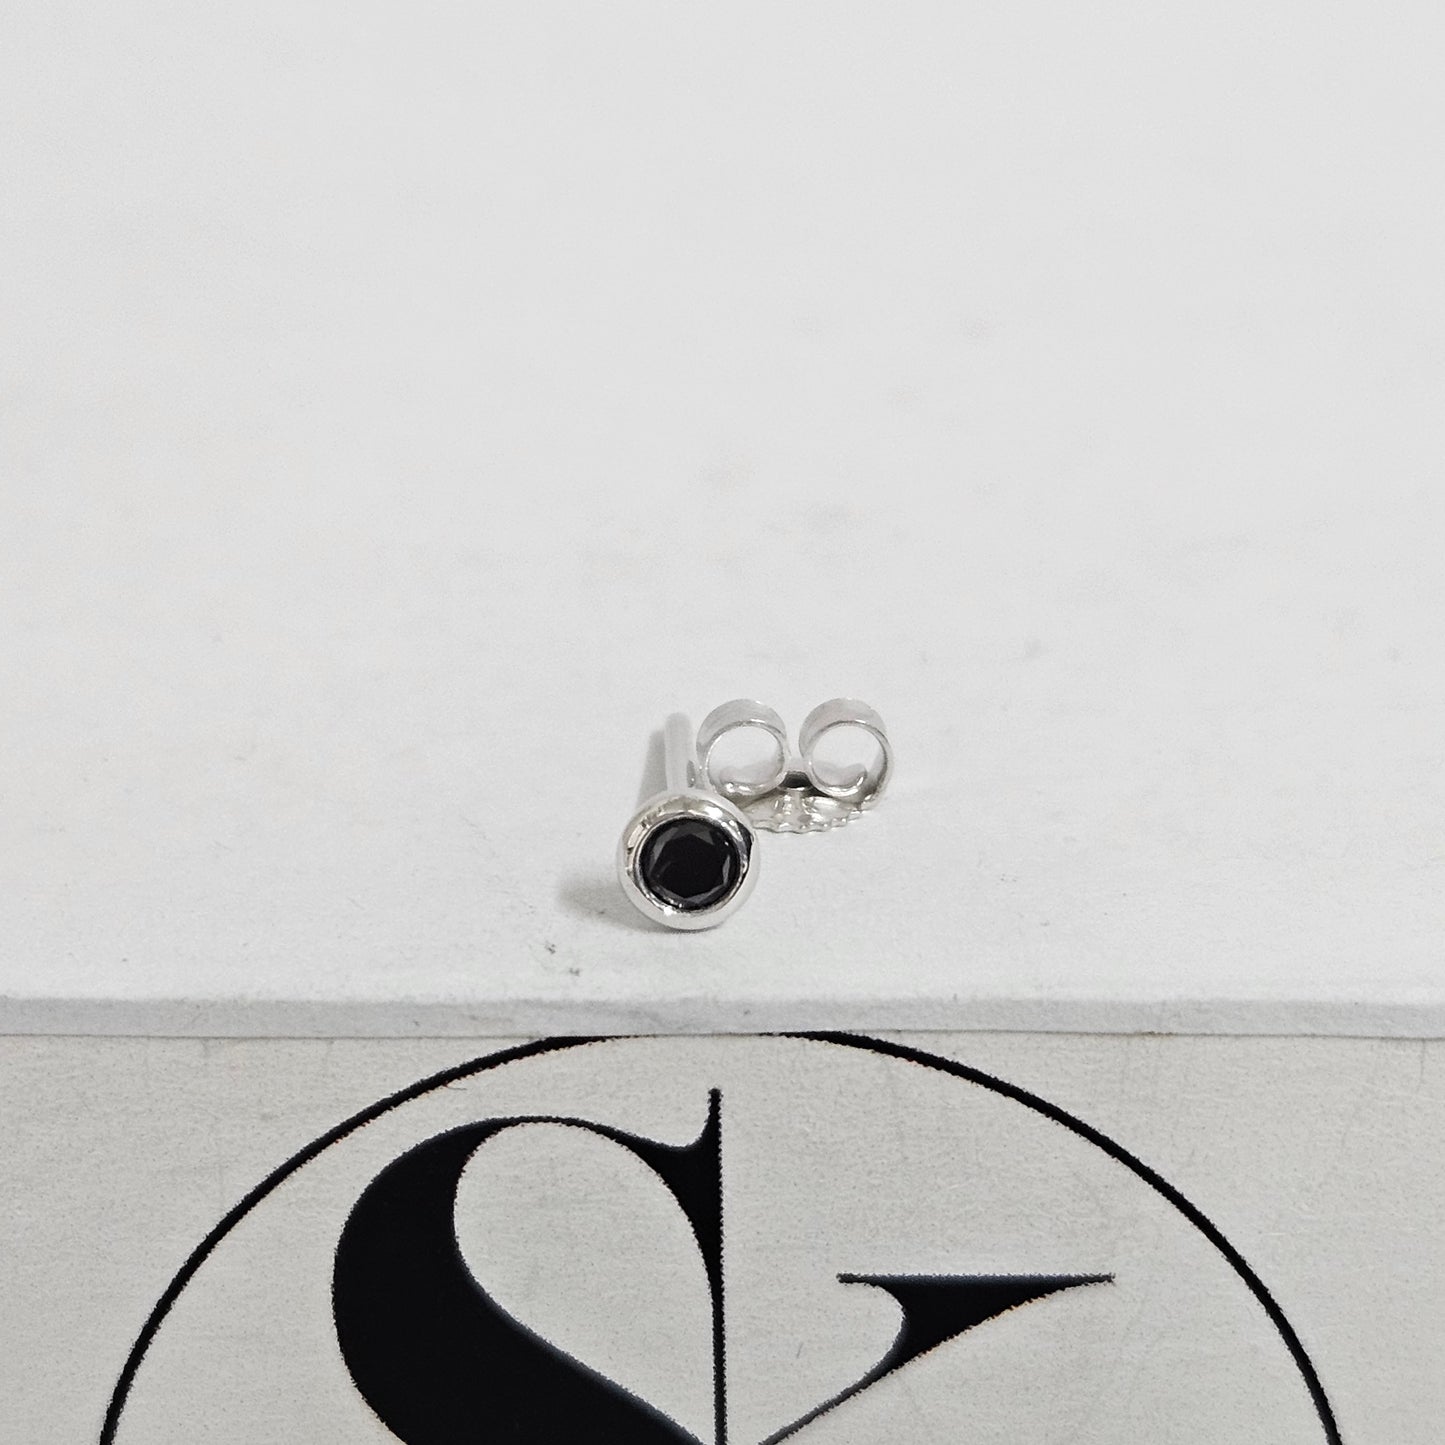 Solitaire Black Diamond Earring/Bezel Set Black Diamond Earring/14K gold Solitaire Stud Earring/Dainty Simple Earring/Anniversary gift